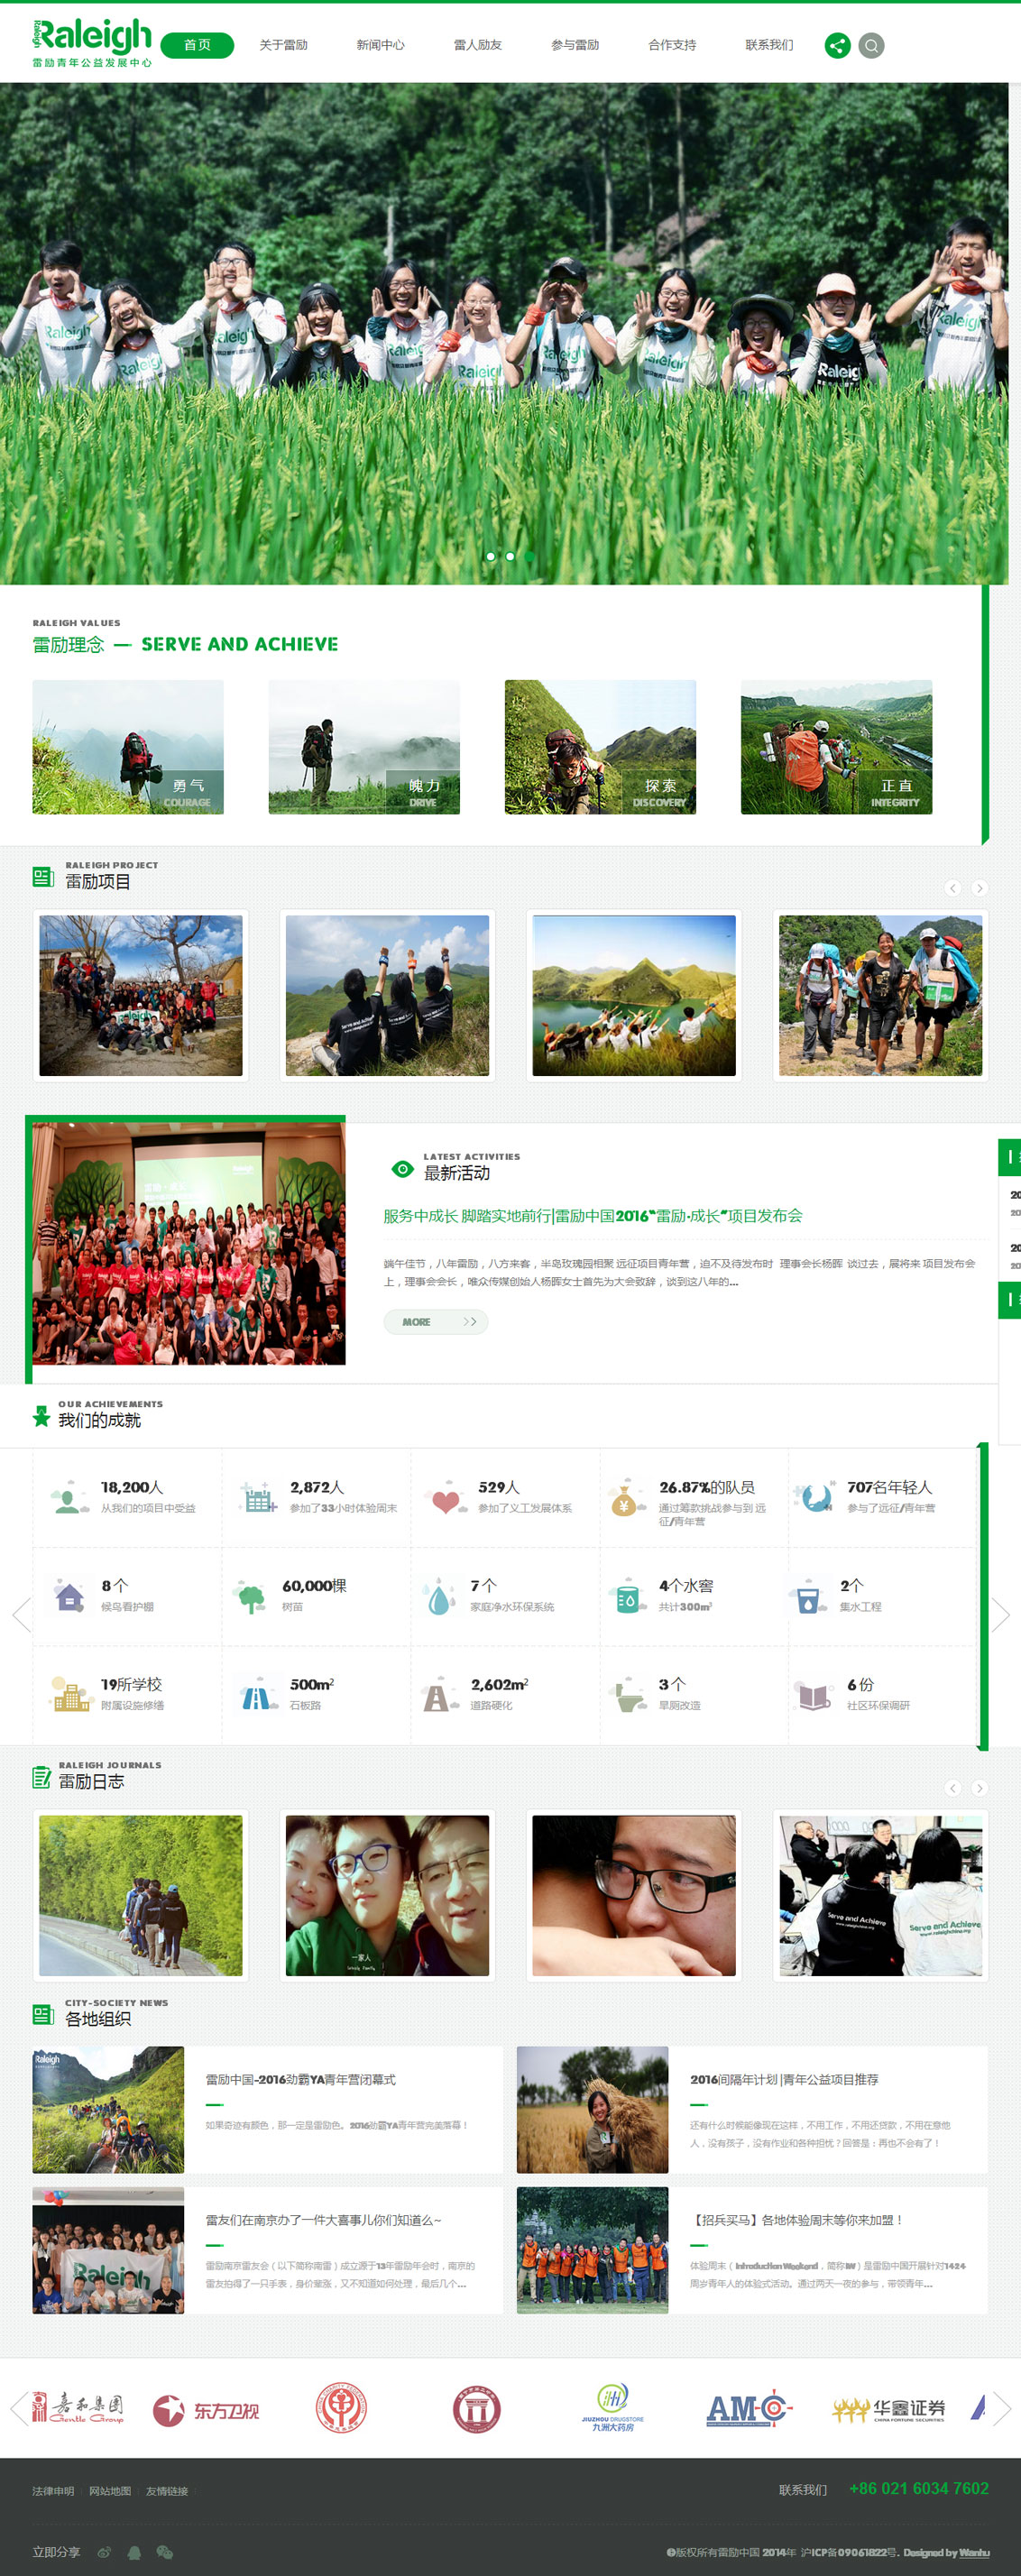 上海雷励青年公益发展中心-万户网络设计制作网站